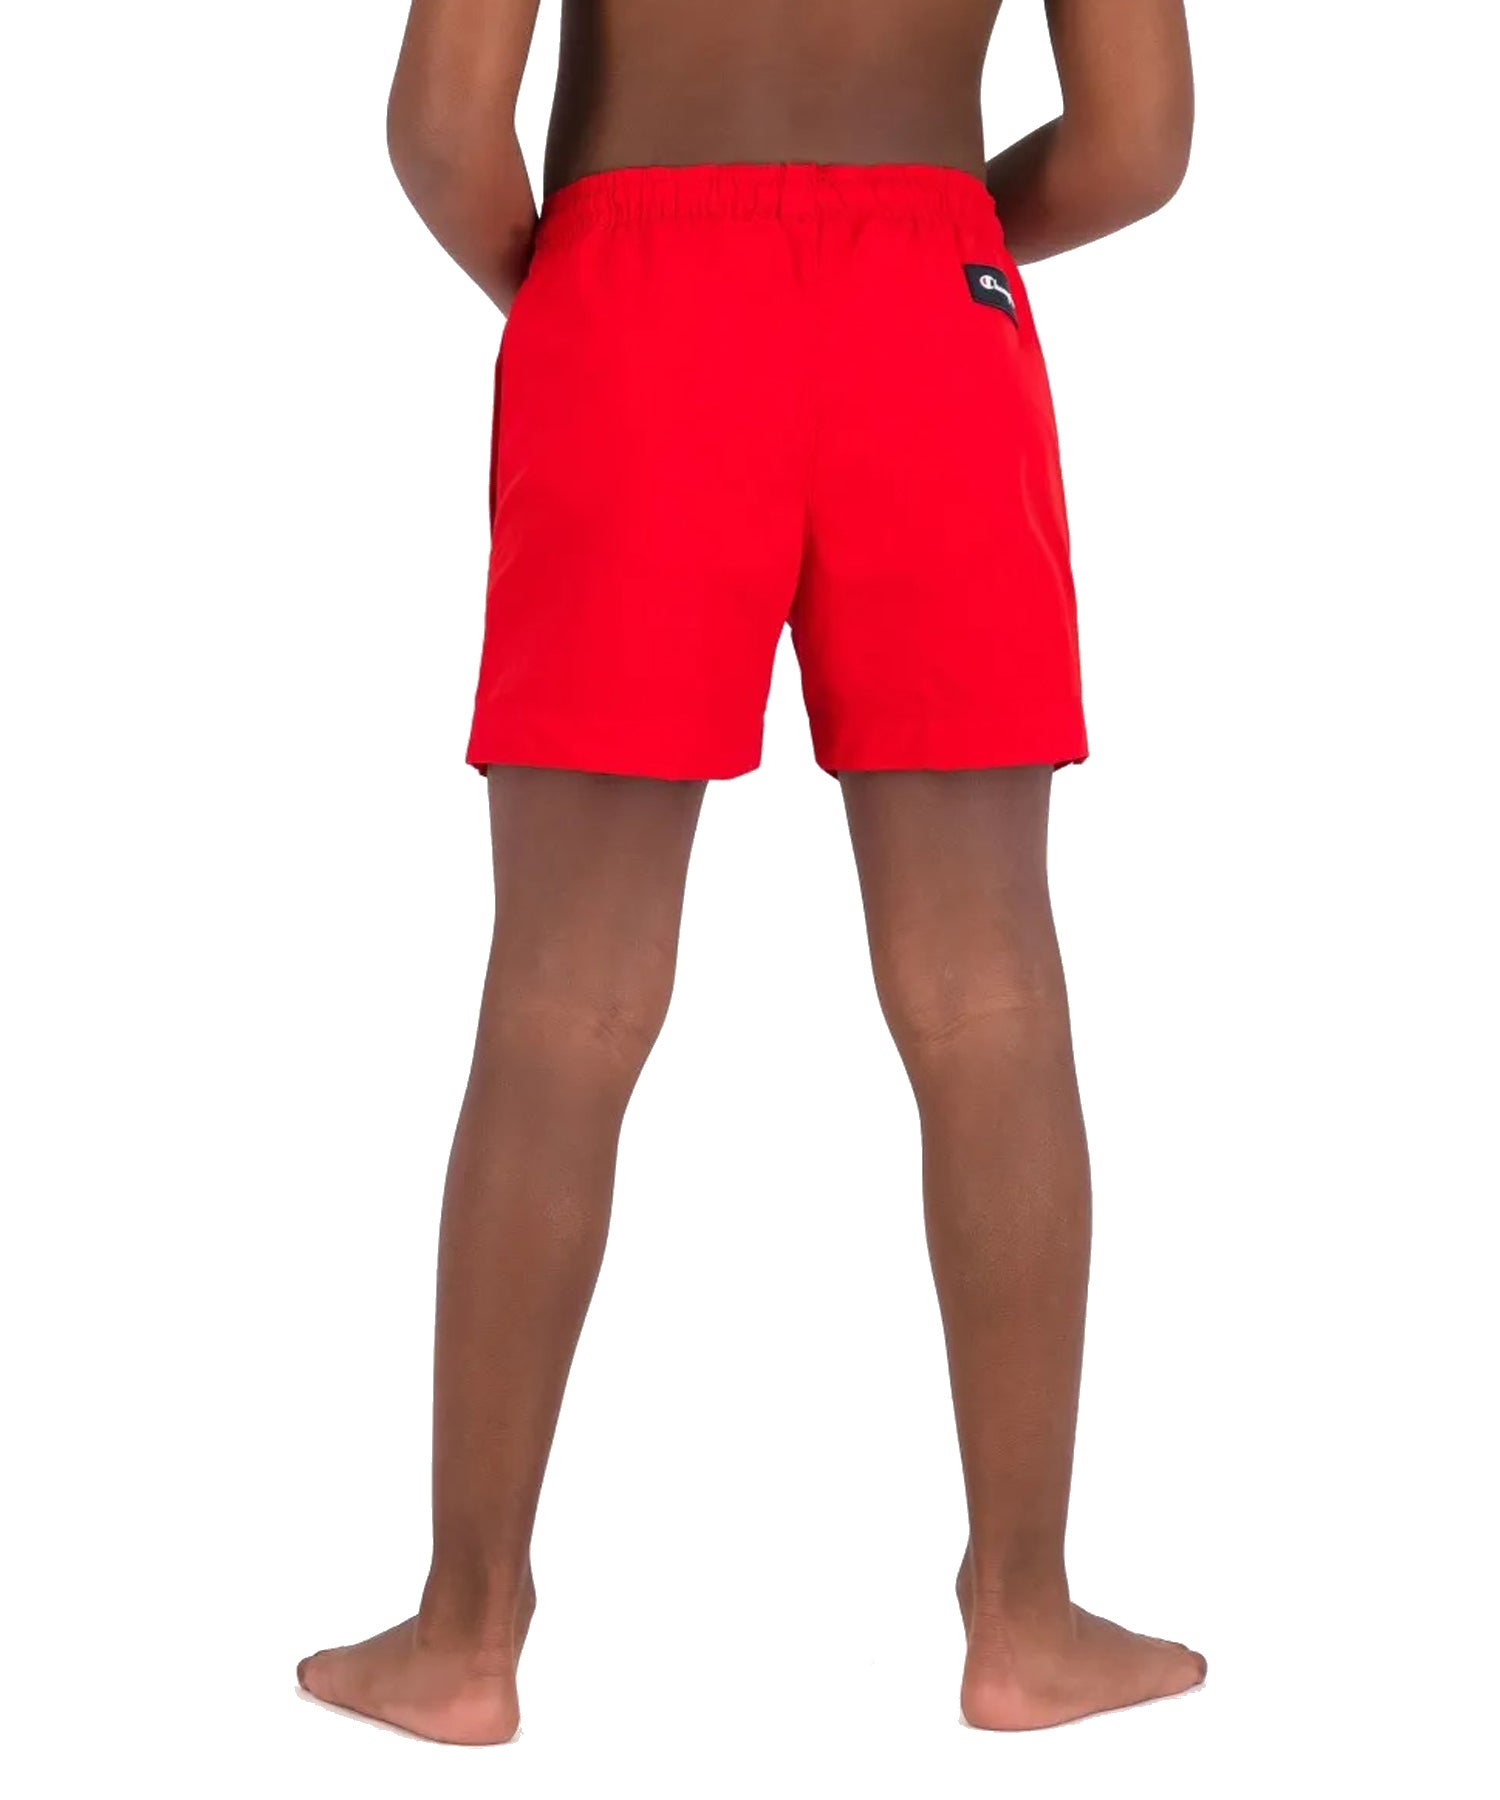 Bañador para niños Champion de color rojo con logo Champion en la pierna.